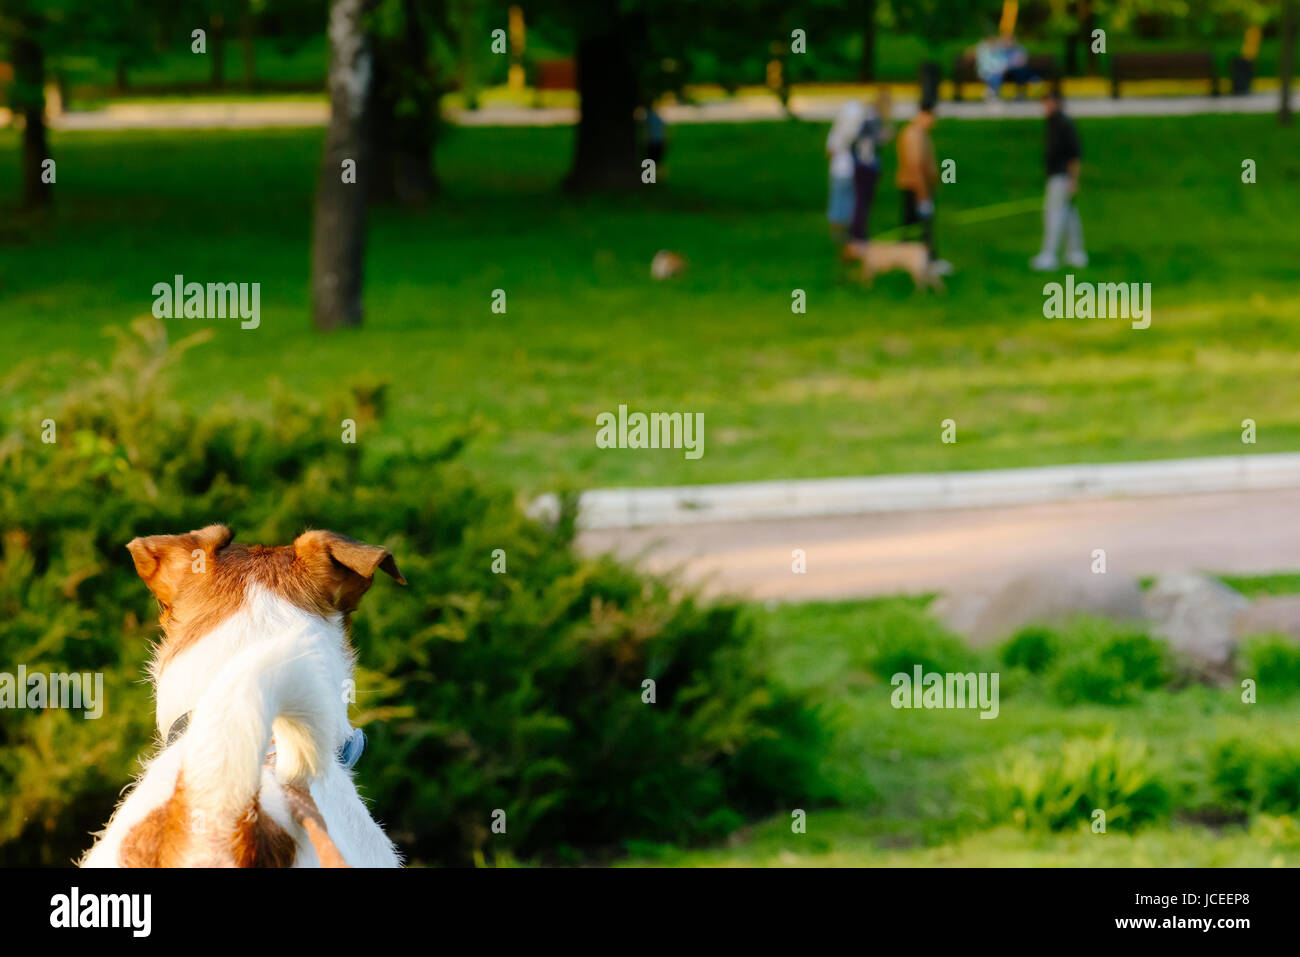 Hund auf andere Hunde spielen auf Rasen im park Stockfoto